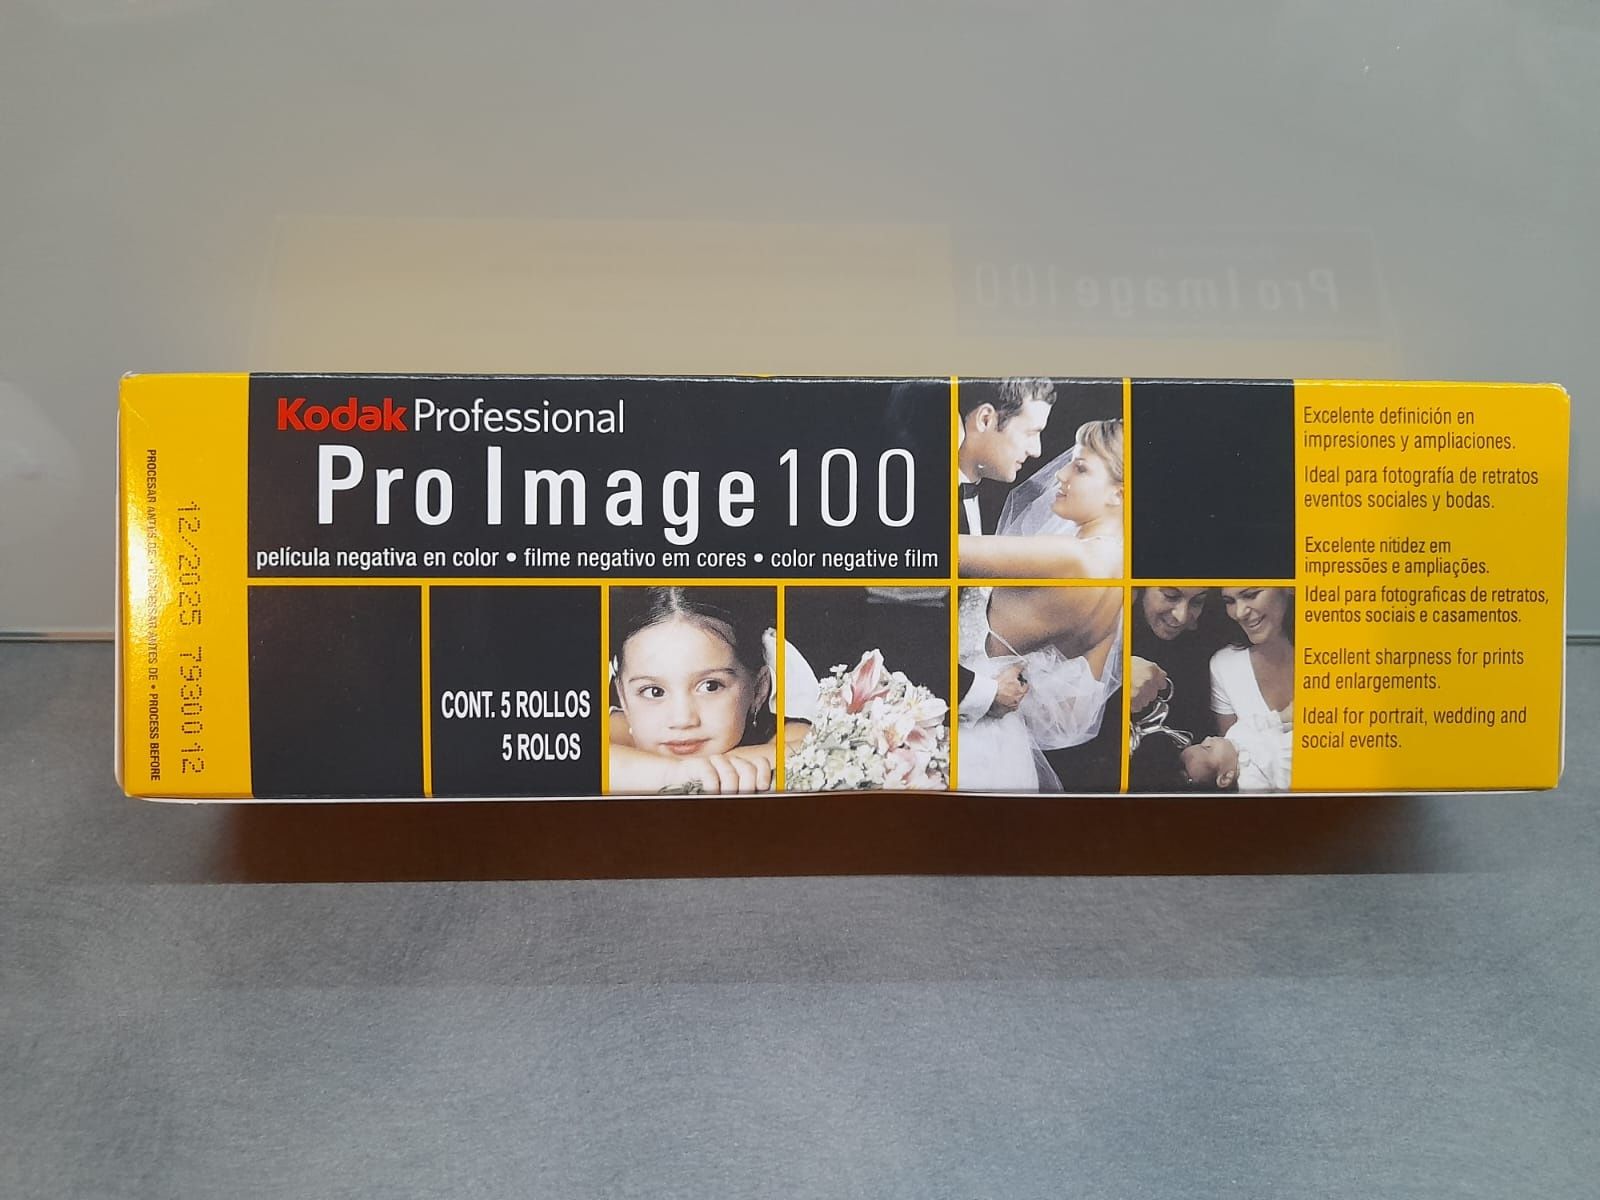 Kodak Professional Pro Image 100